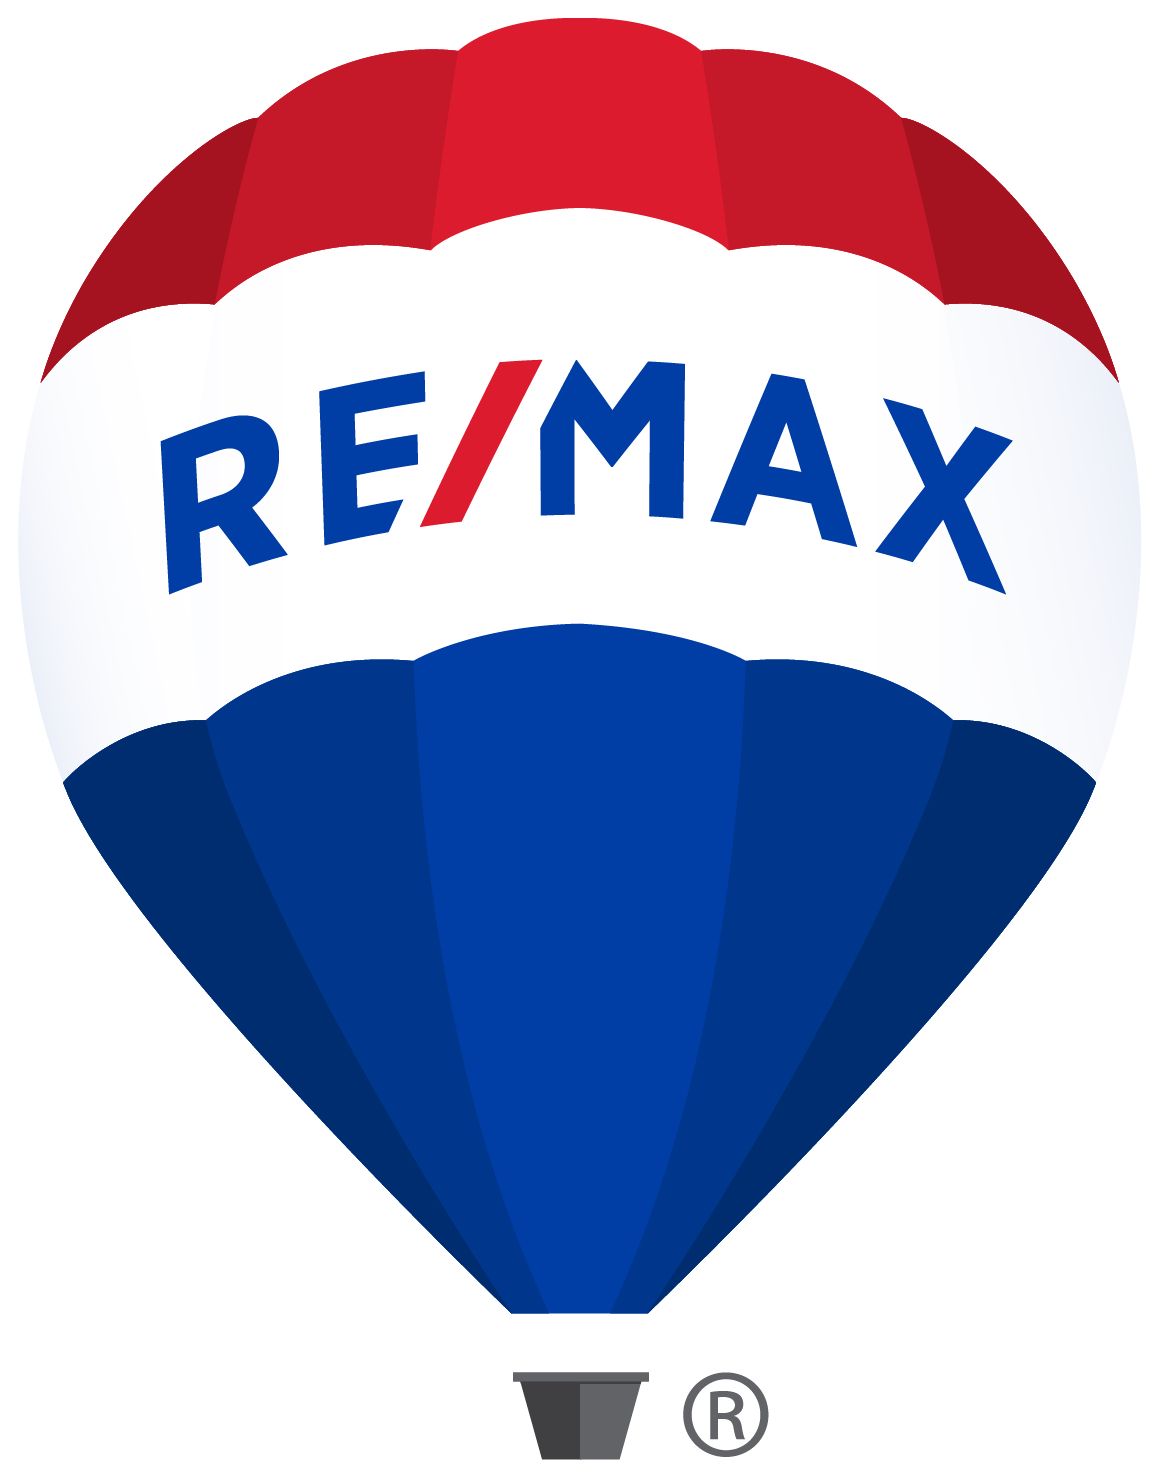 REMAX Properties